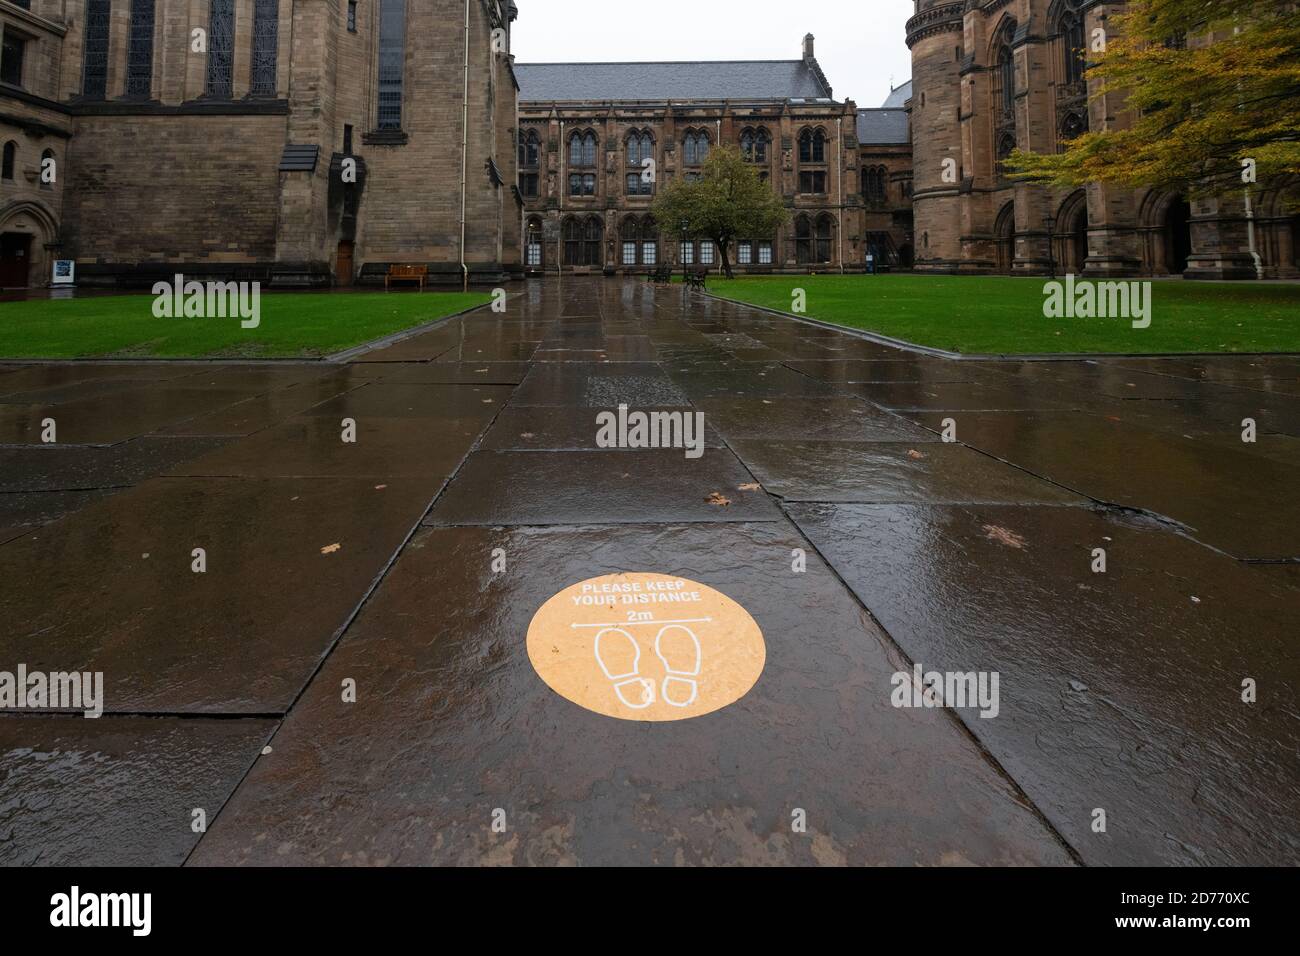 2m soziales Distanzierungszeichen in einer fast verlassenen Glasgow University während der Coronavirus-Pandemie 2020, Schottland, Großbritannien Stockfoto